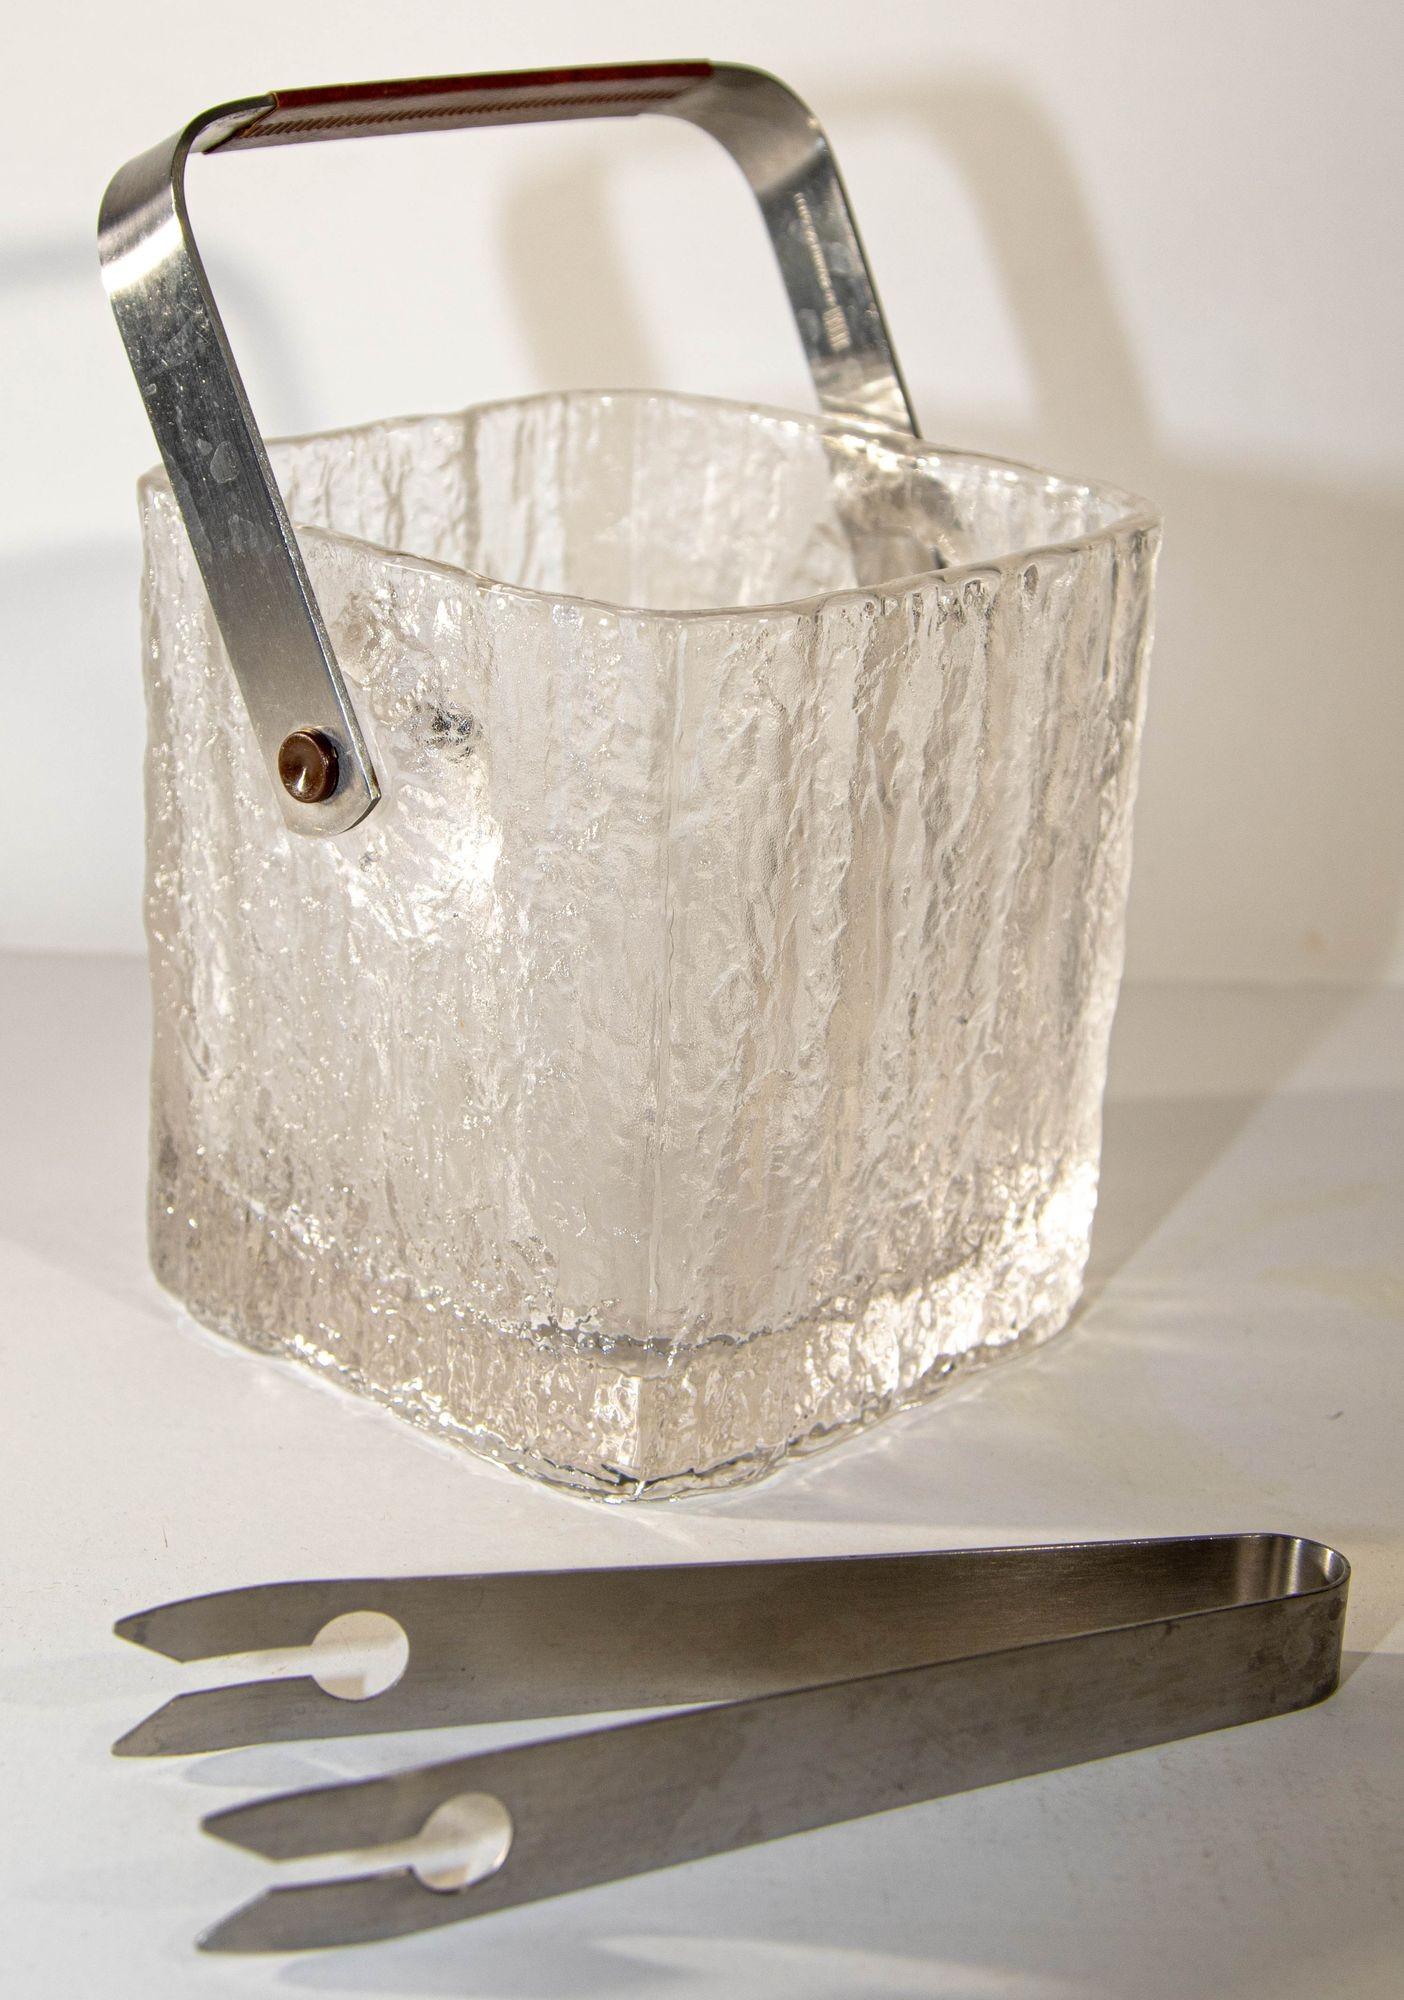 Vintage Mid-Century Modern Hoya Glacier Ice Bucket With Textured Ice Glass, Japan, Circa 1960s.
Fabriqué dans les années 1960 par la marque japonaise Hoya, ce seau à glace japonais vintage, de style moderne du milieu du siècle, présente un design